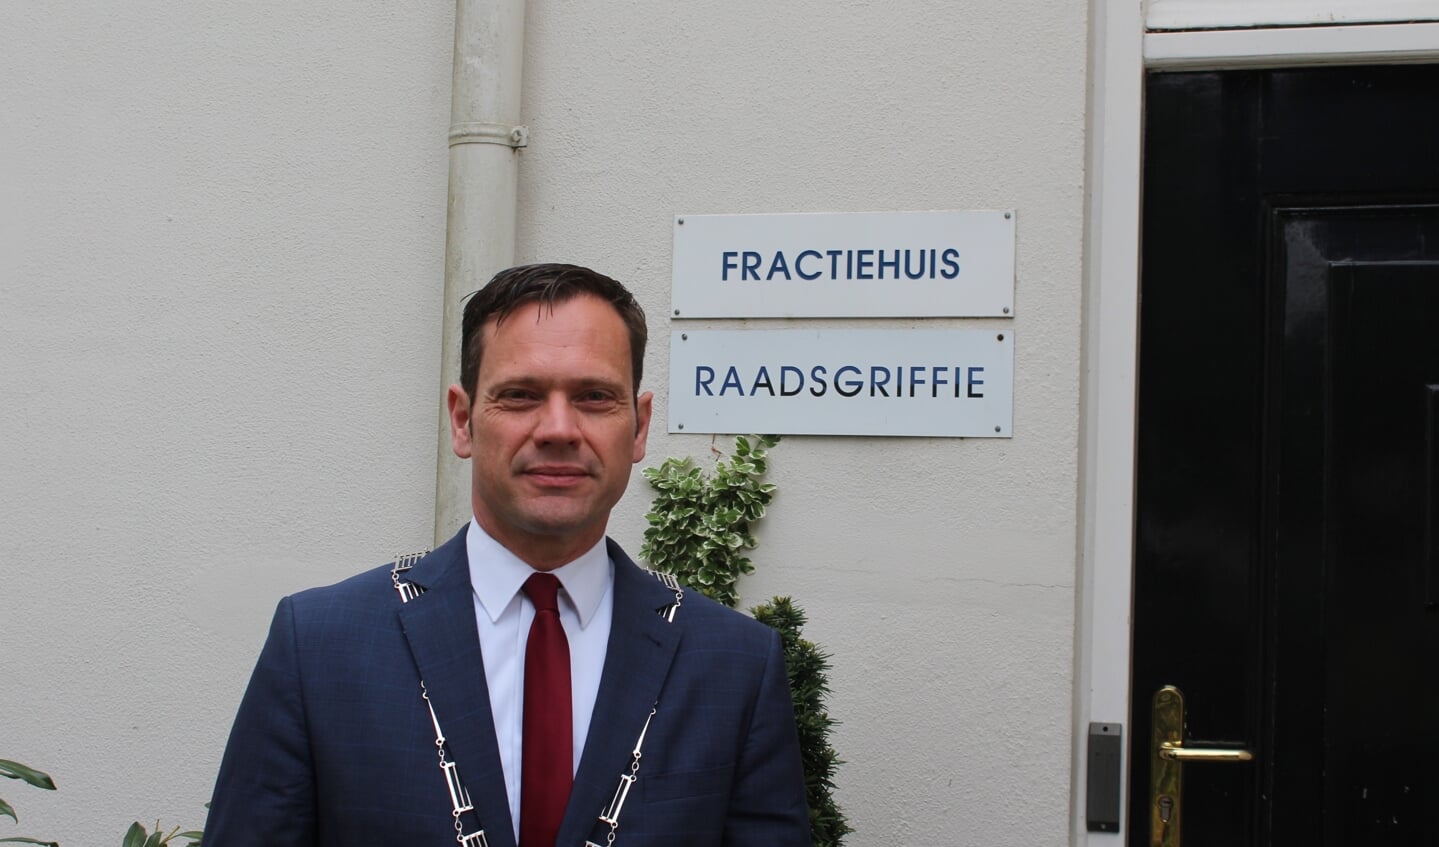 De voorzitter van de gemeenteraad burgemeester Sjoerd Potters bij de ingang van de Biltse Raadsgriffie.